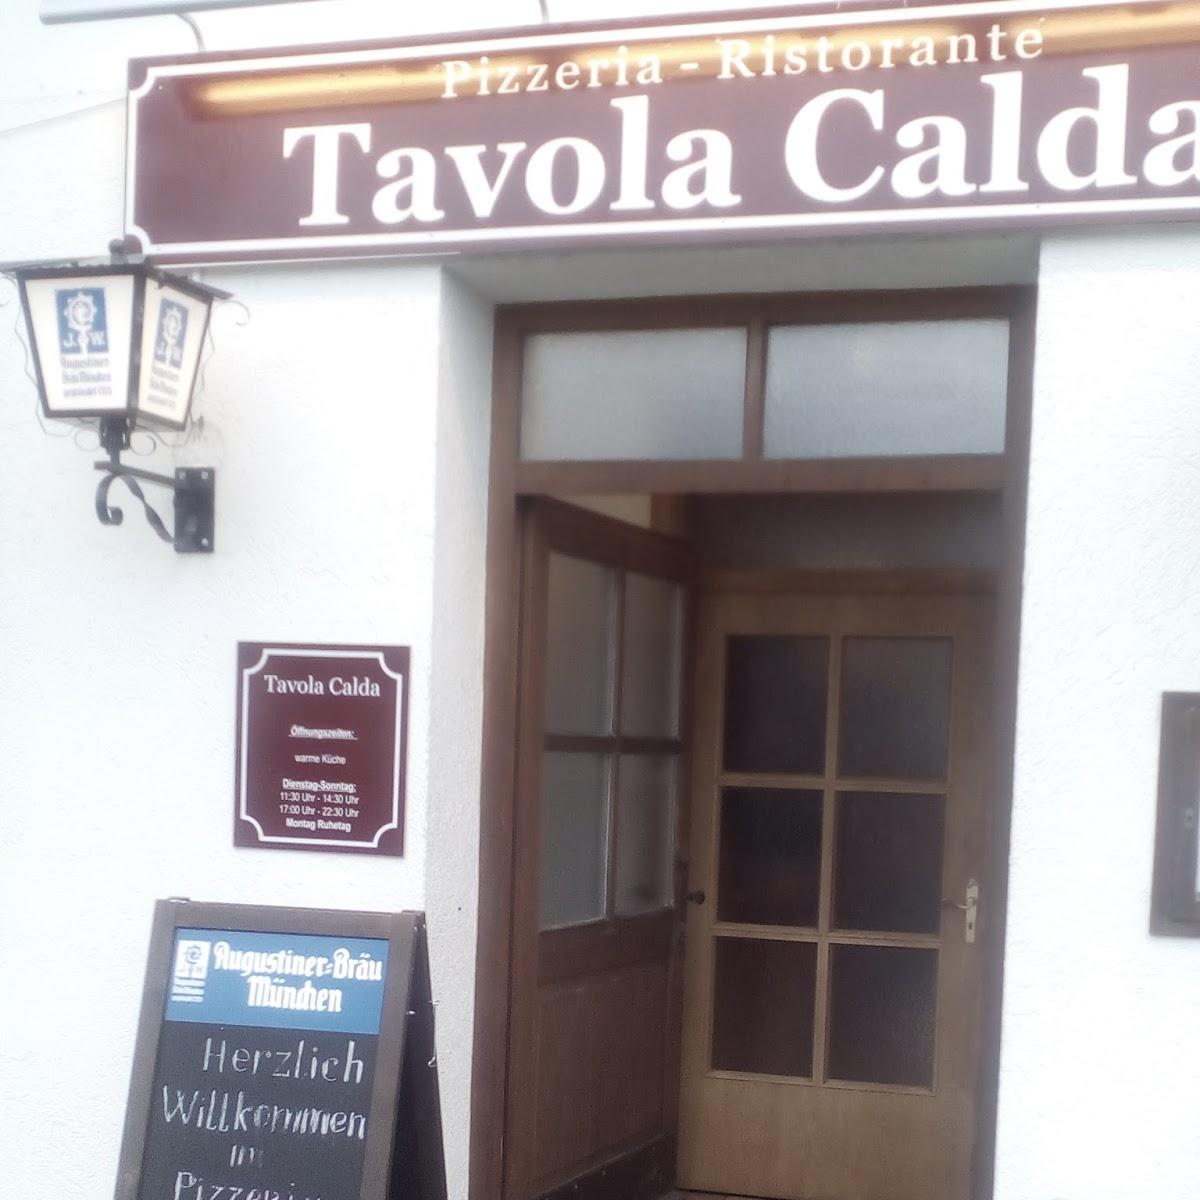 Restaurant "Pizzeria -Ristorante Tavola Calda" in Bad Feilnbach